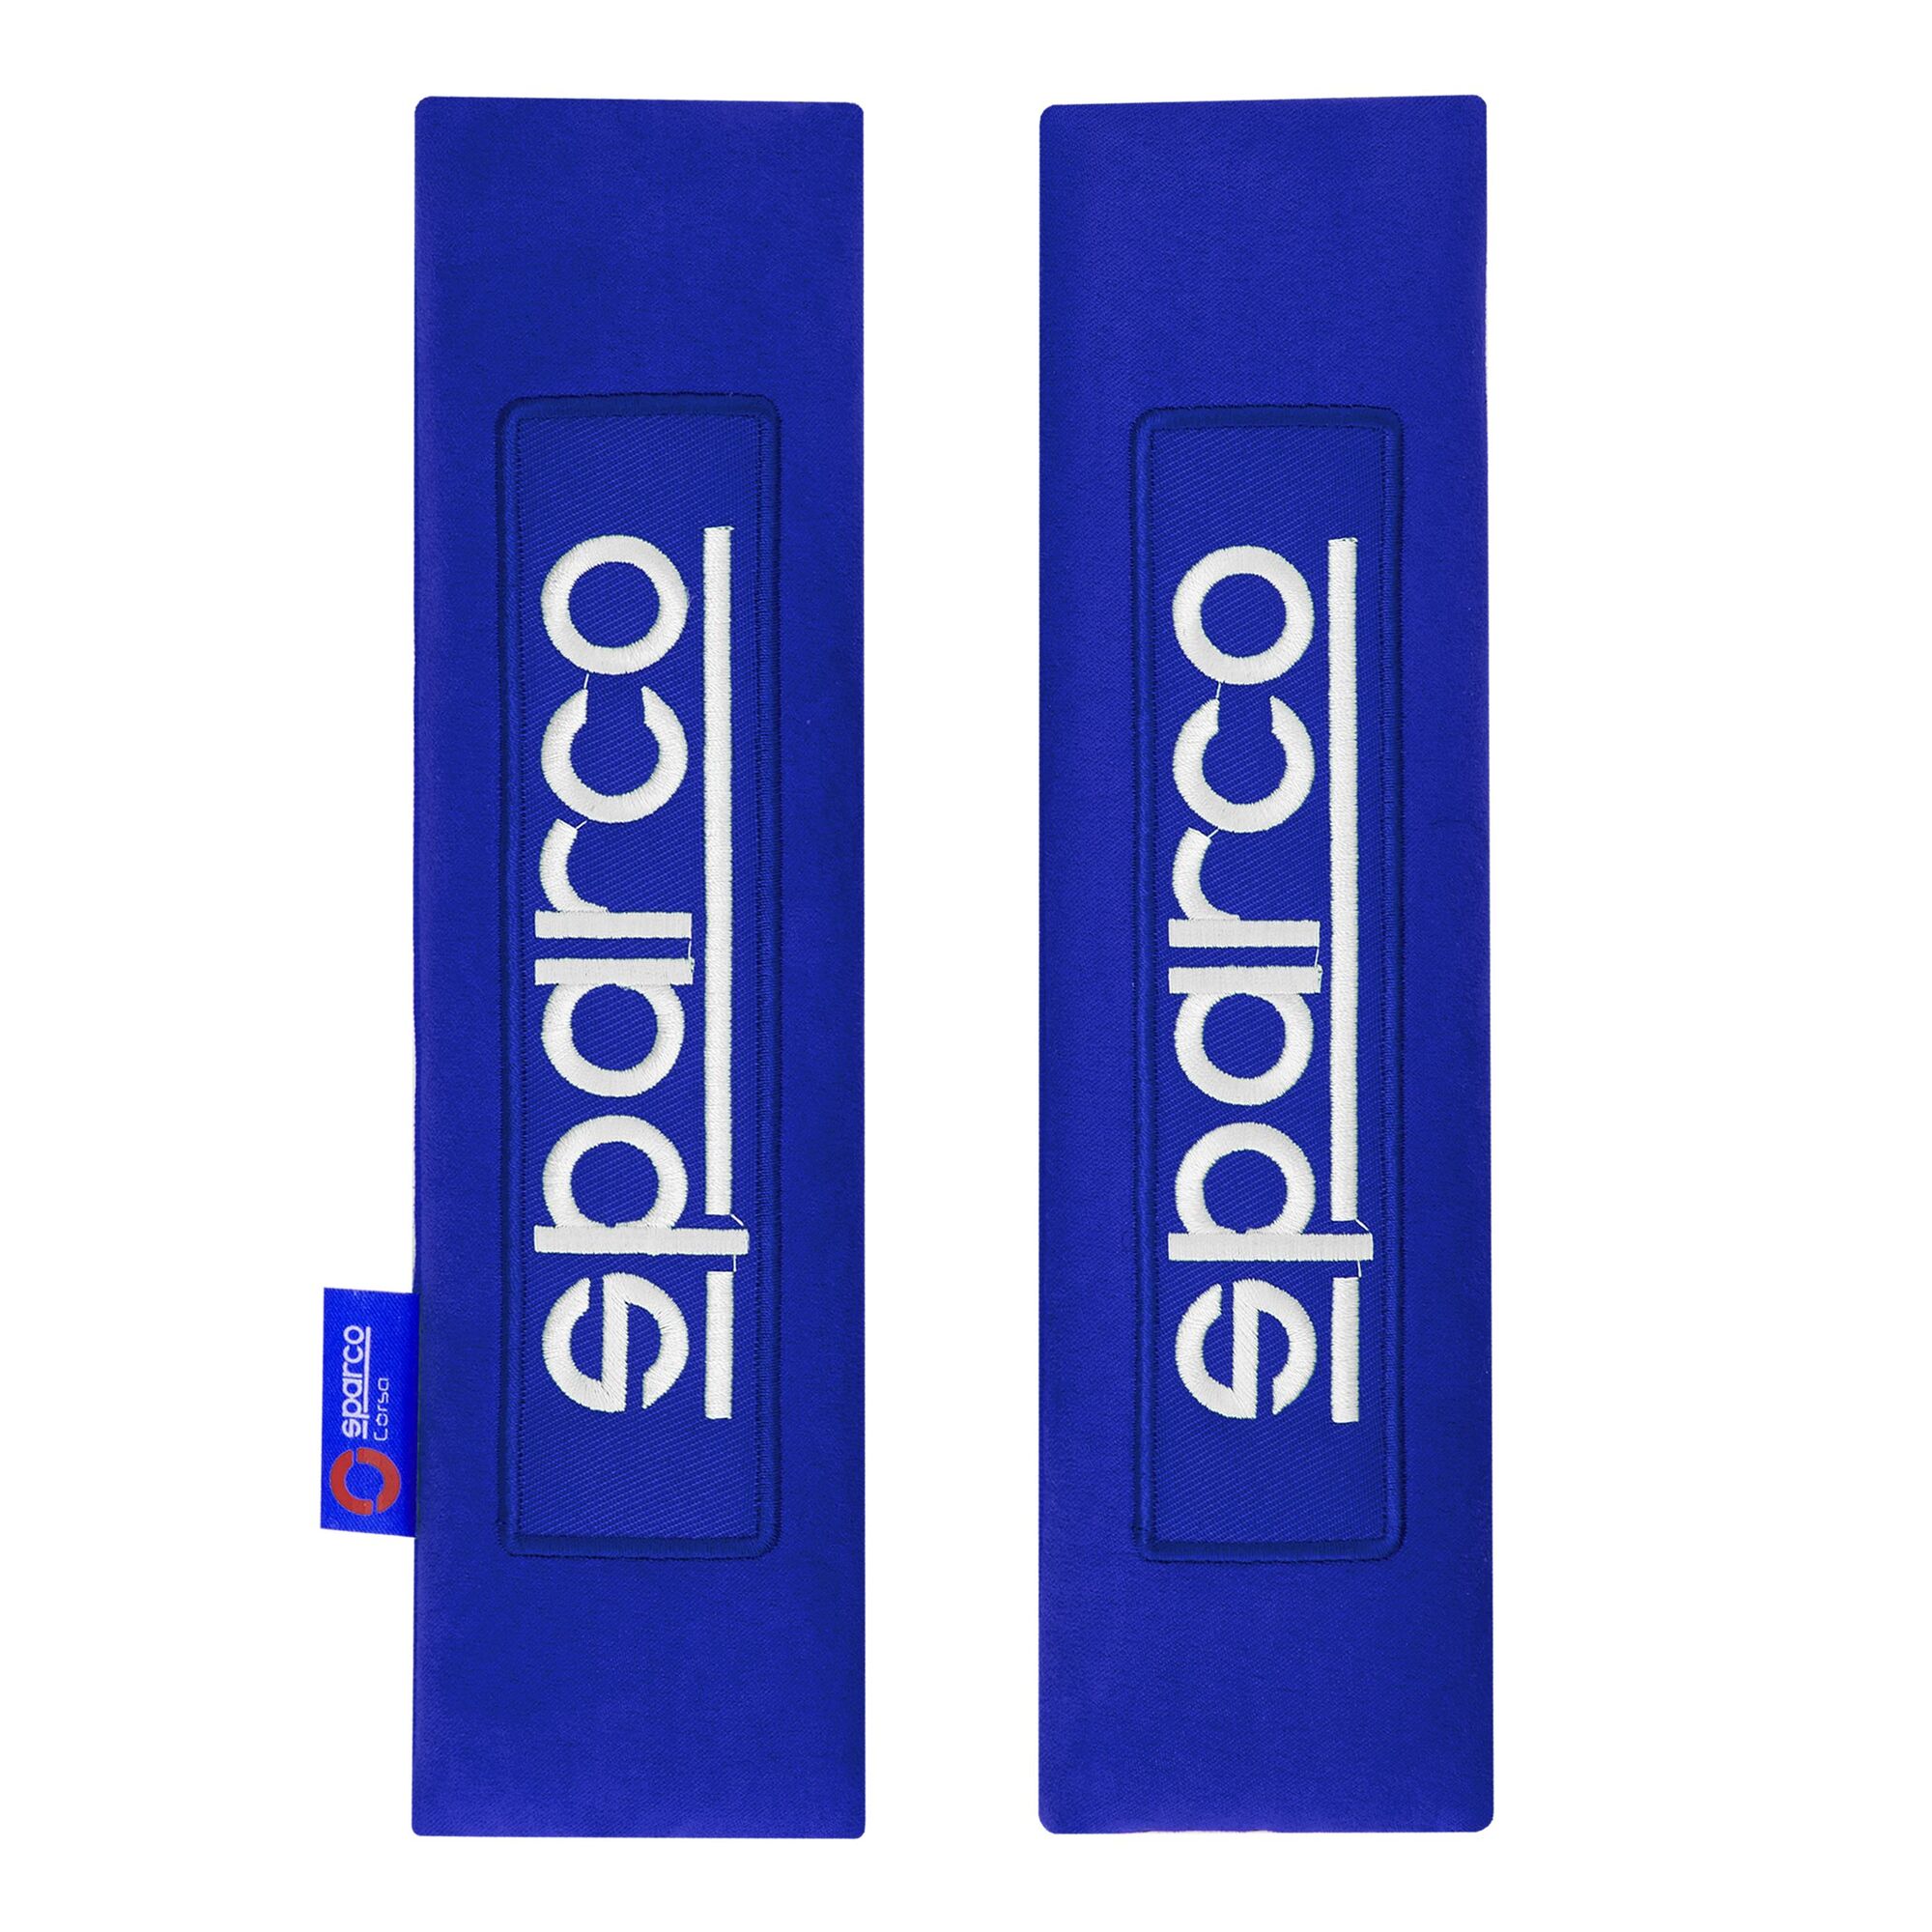 Seat belt pads 2pcs blue Sparco